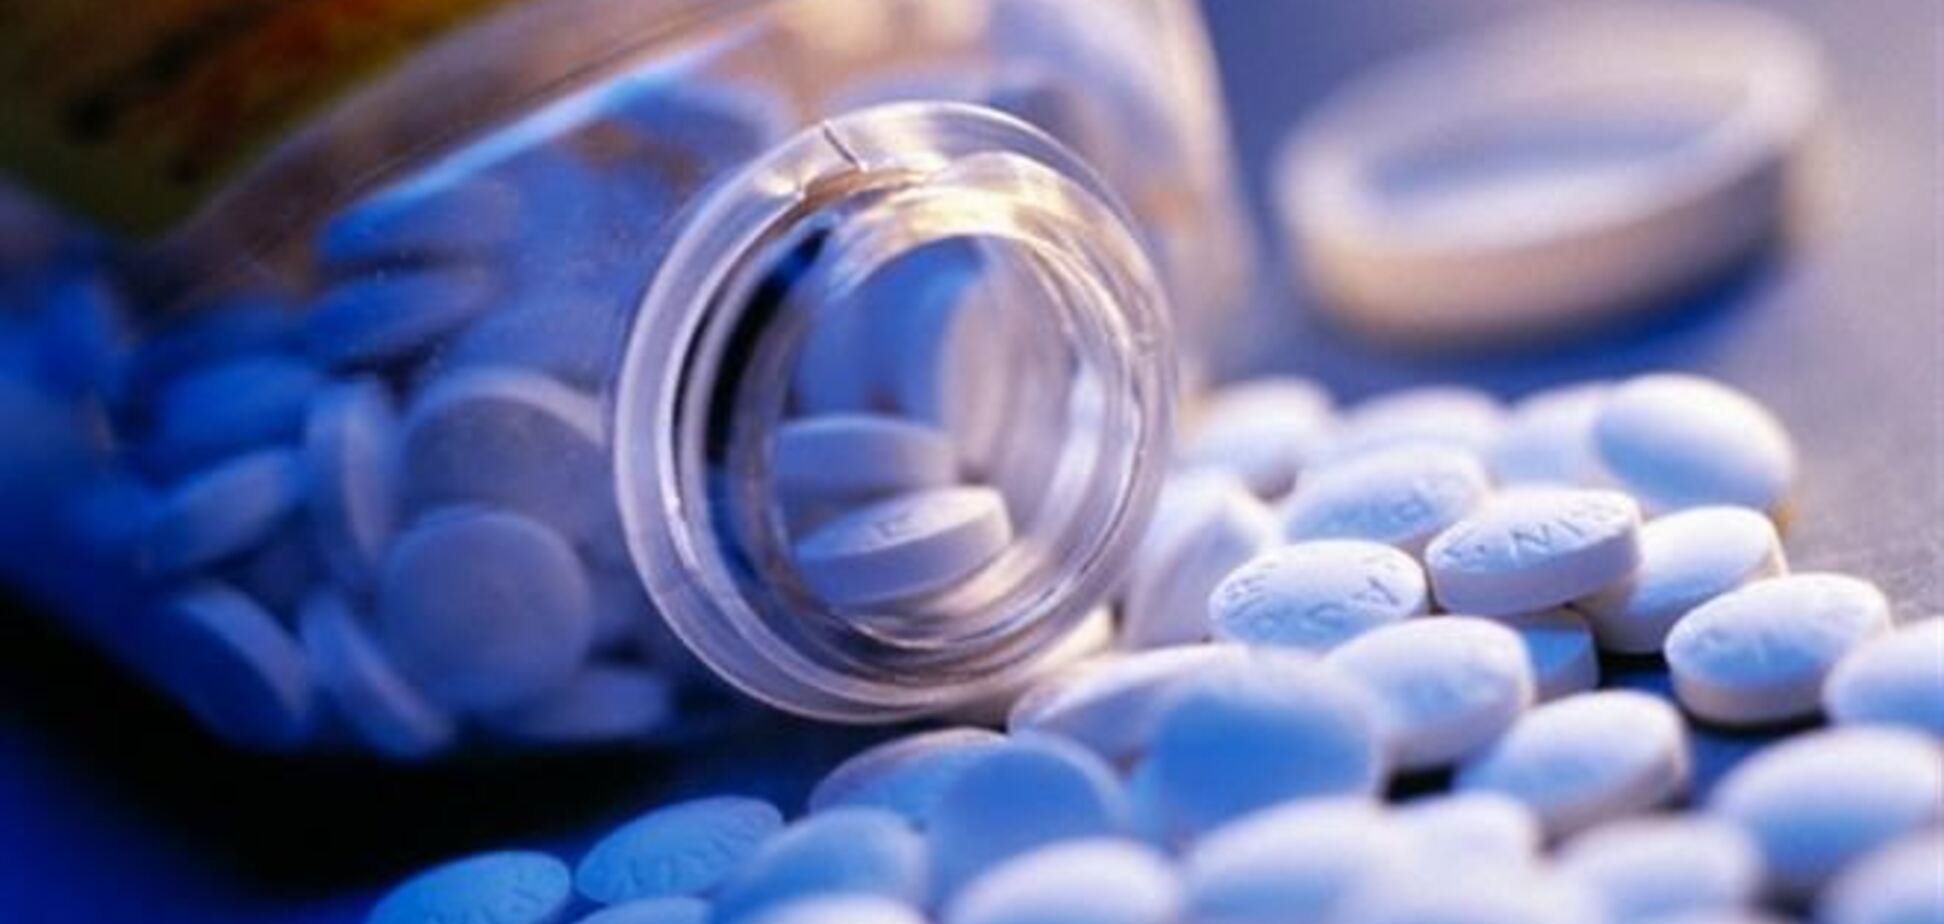 Аспирин приносит больше вреда, чем пользы, 26 октября 2013